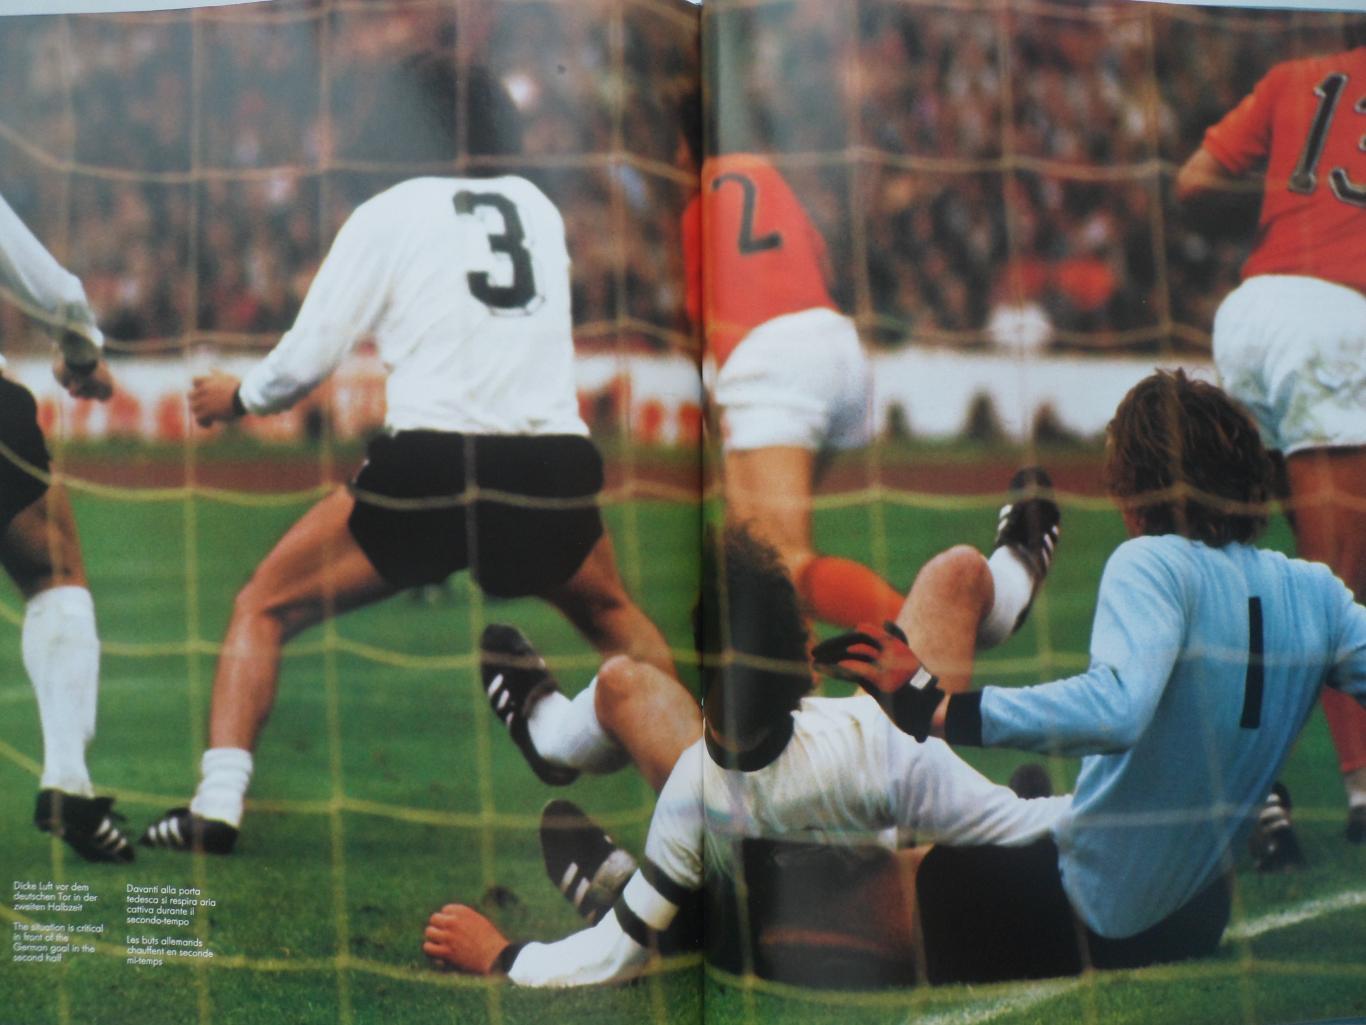 фотоальбом Чемпионат мира по футболу 1974 (208 стр.) 6